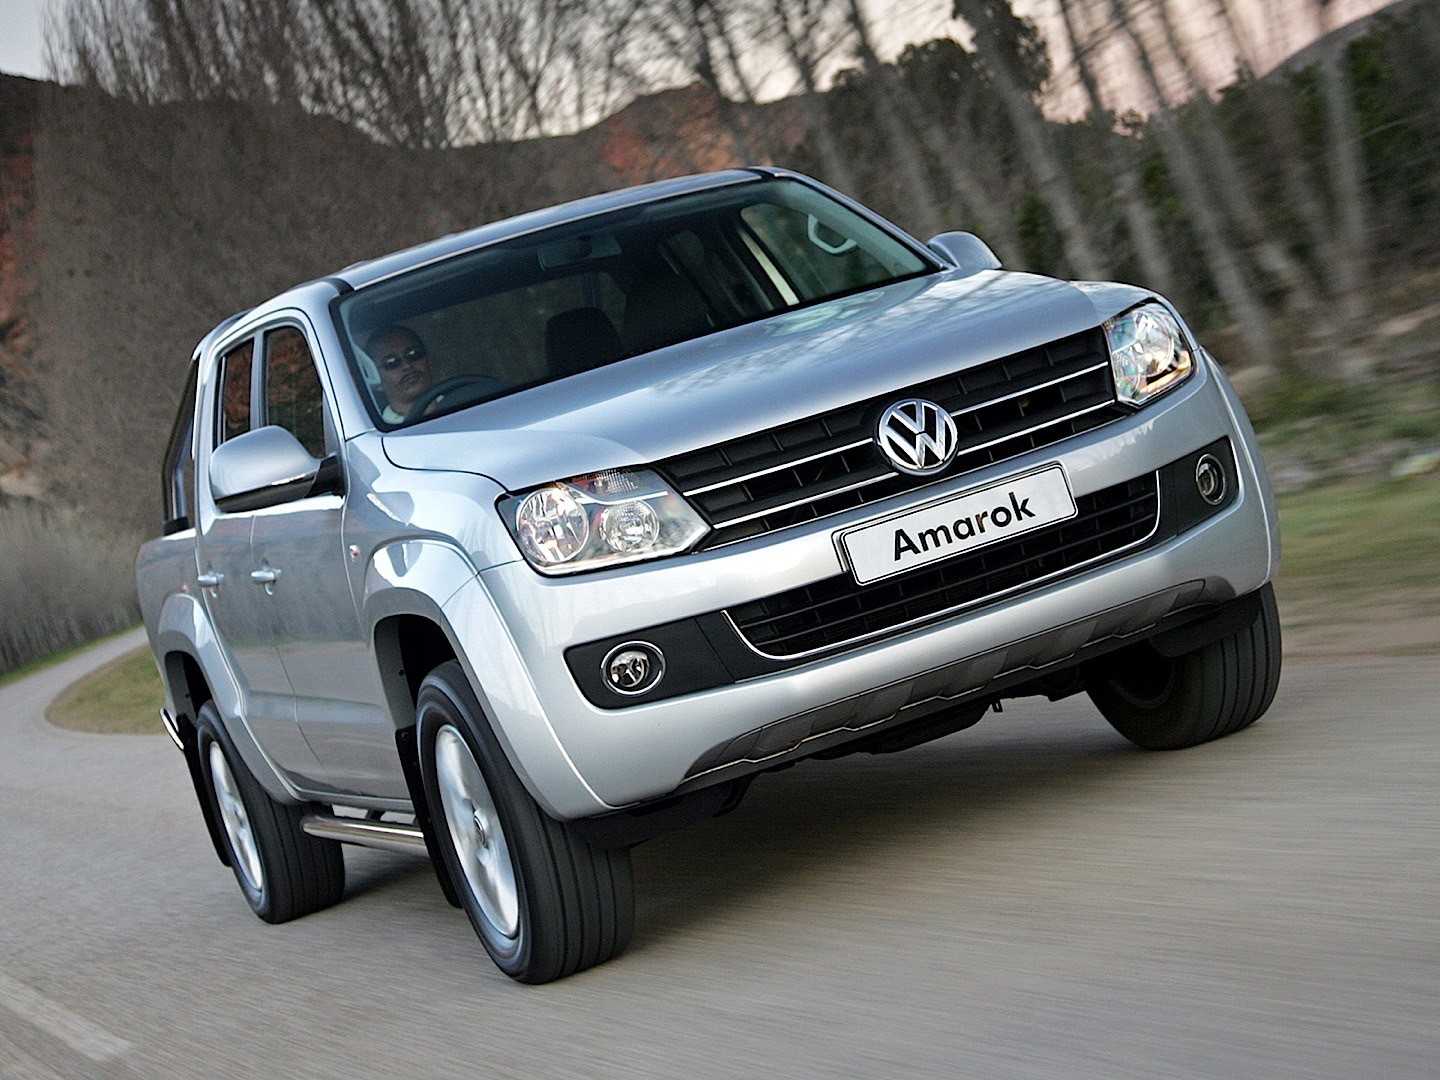 Отзывы реальных владельцев Volkswagen Amarok, описание достоинств и недостатков